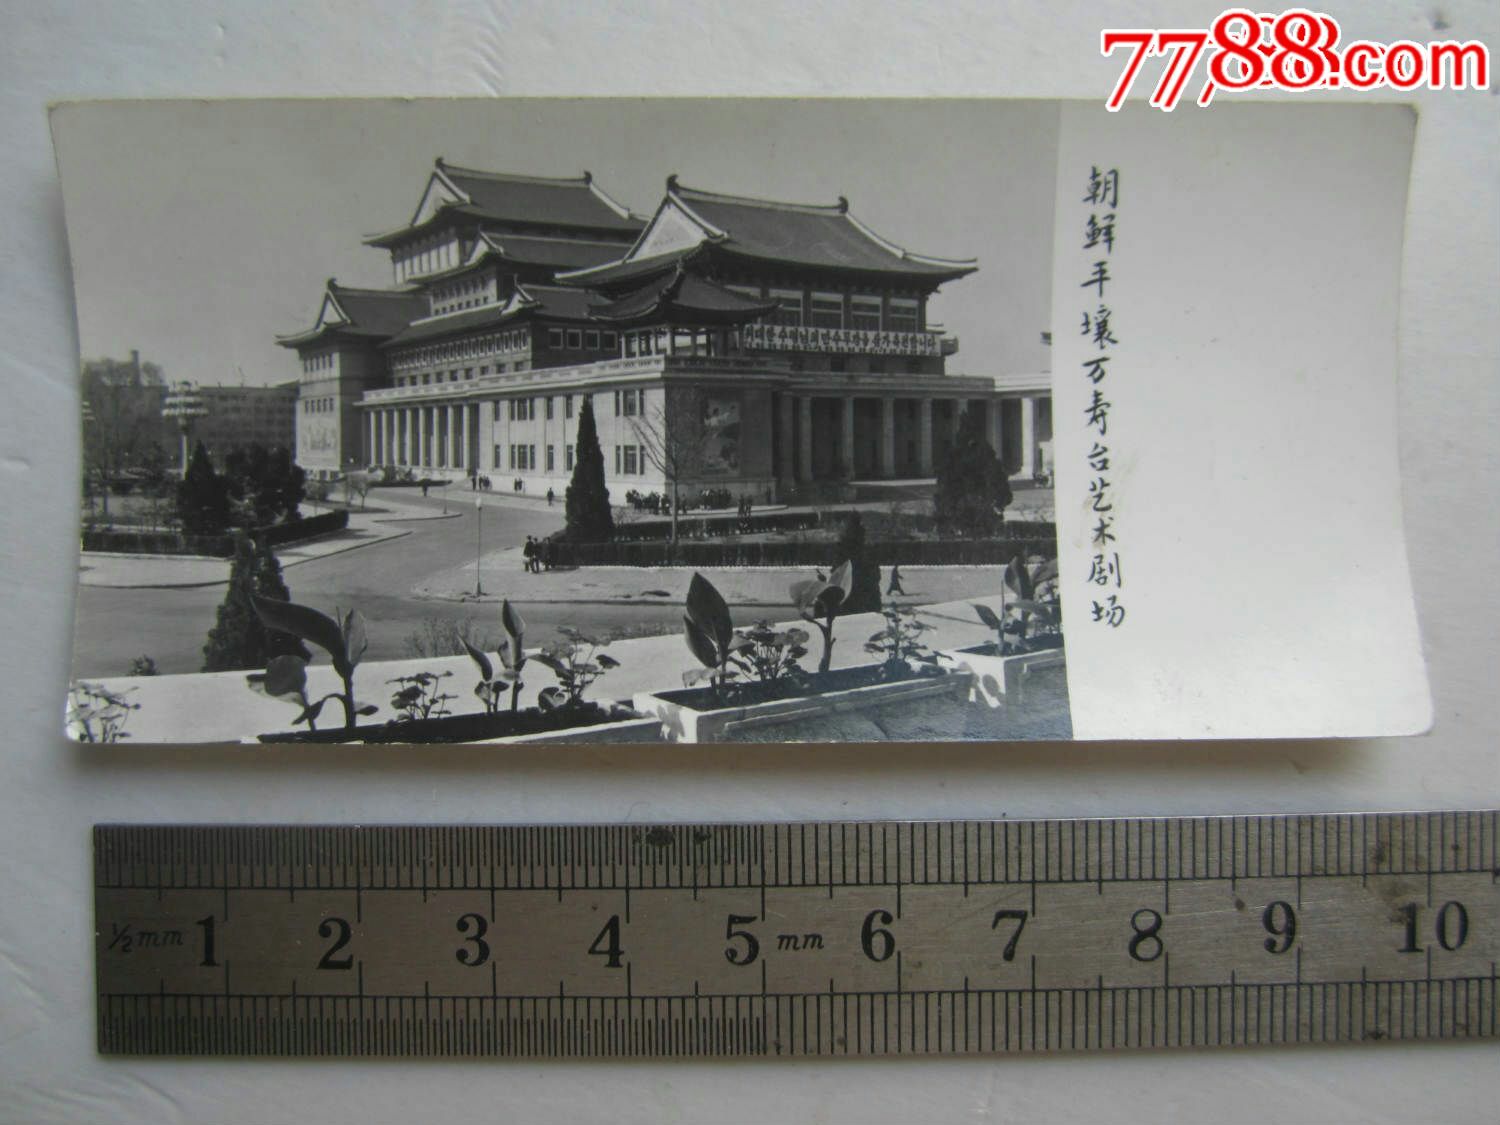 朝鲜平壤万寿台艺术剧场-价格:5元-se59578739-老照片-零售-7788收藏